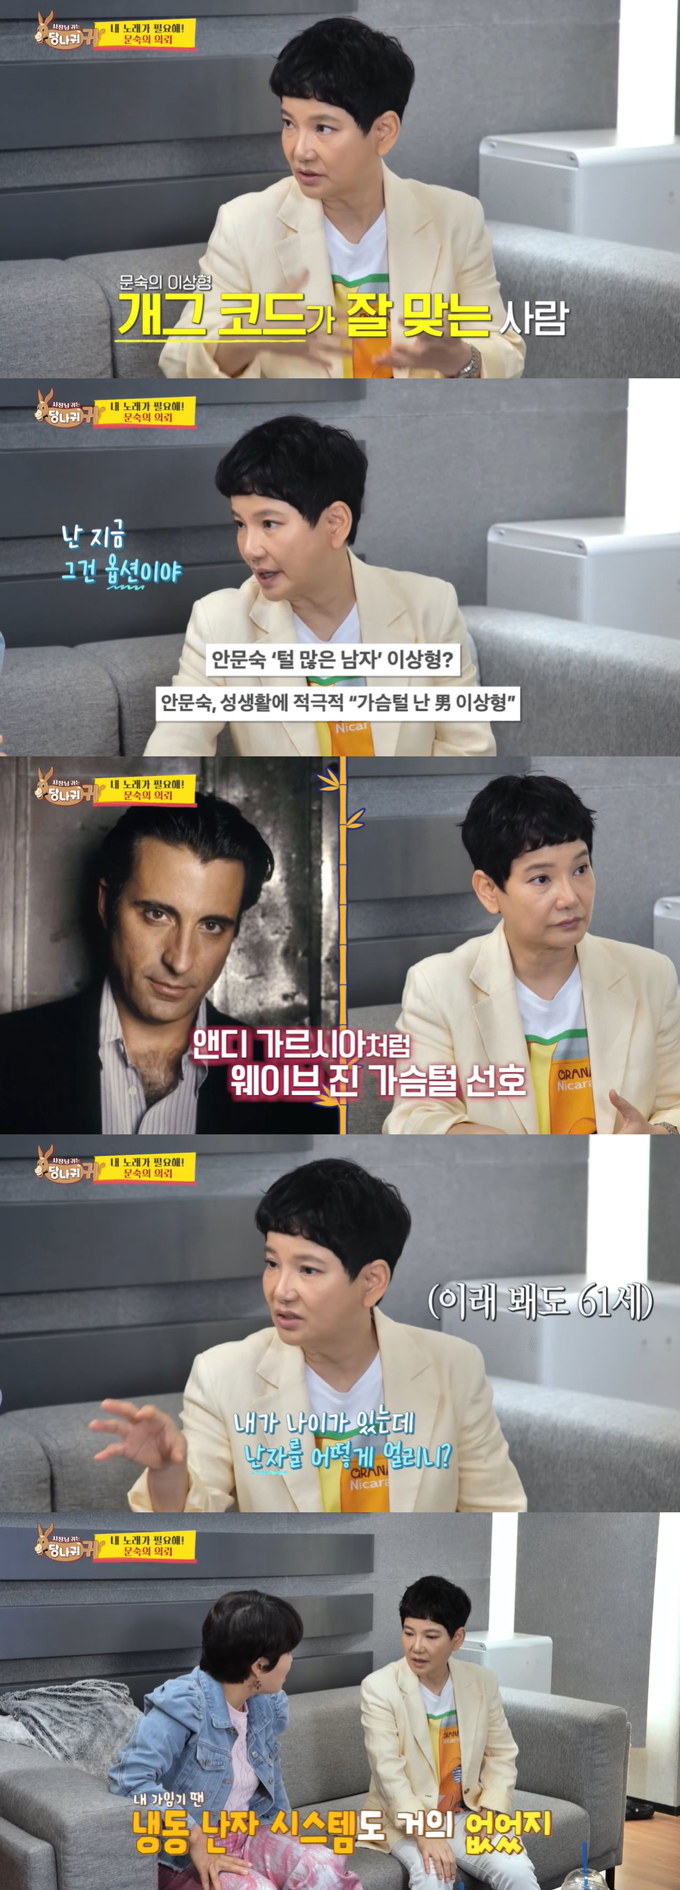  /사진=KBS2 '사장님 귀는 당나귀 귀' 방송 화면